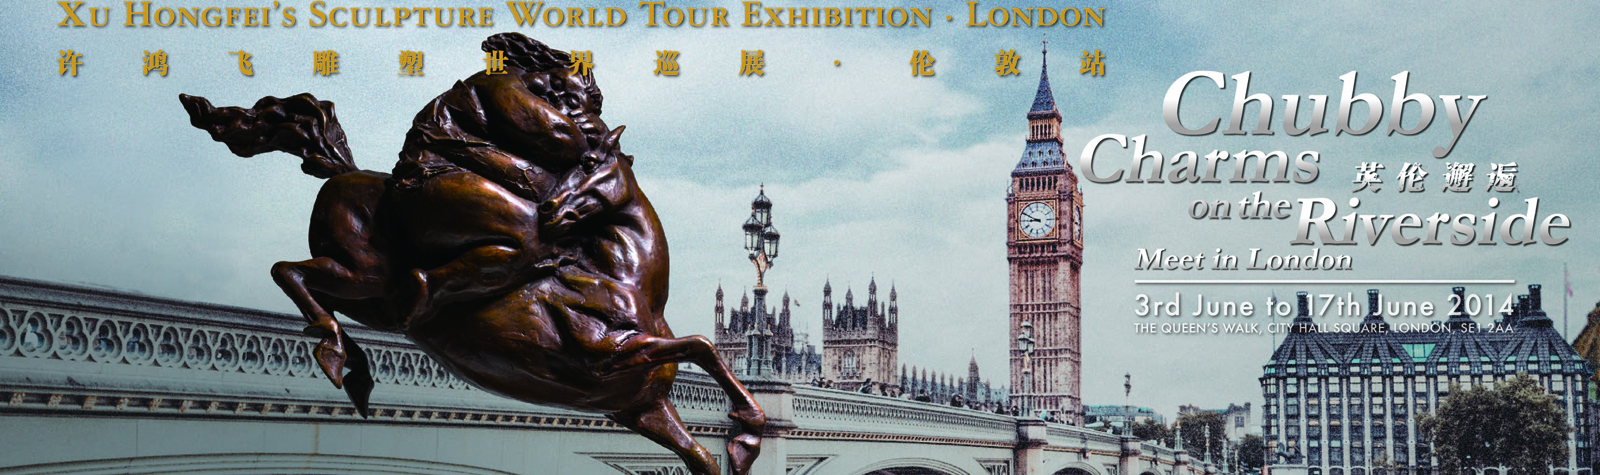 英伦邂逅――许鸿飞雕塑世界巡展伦敦站